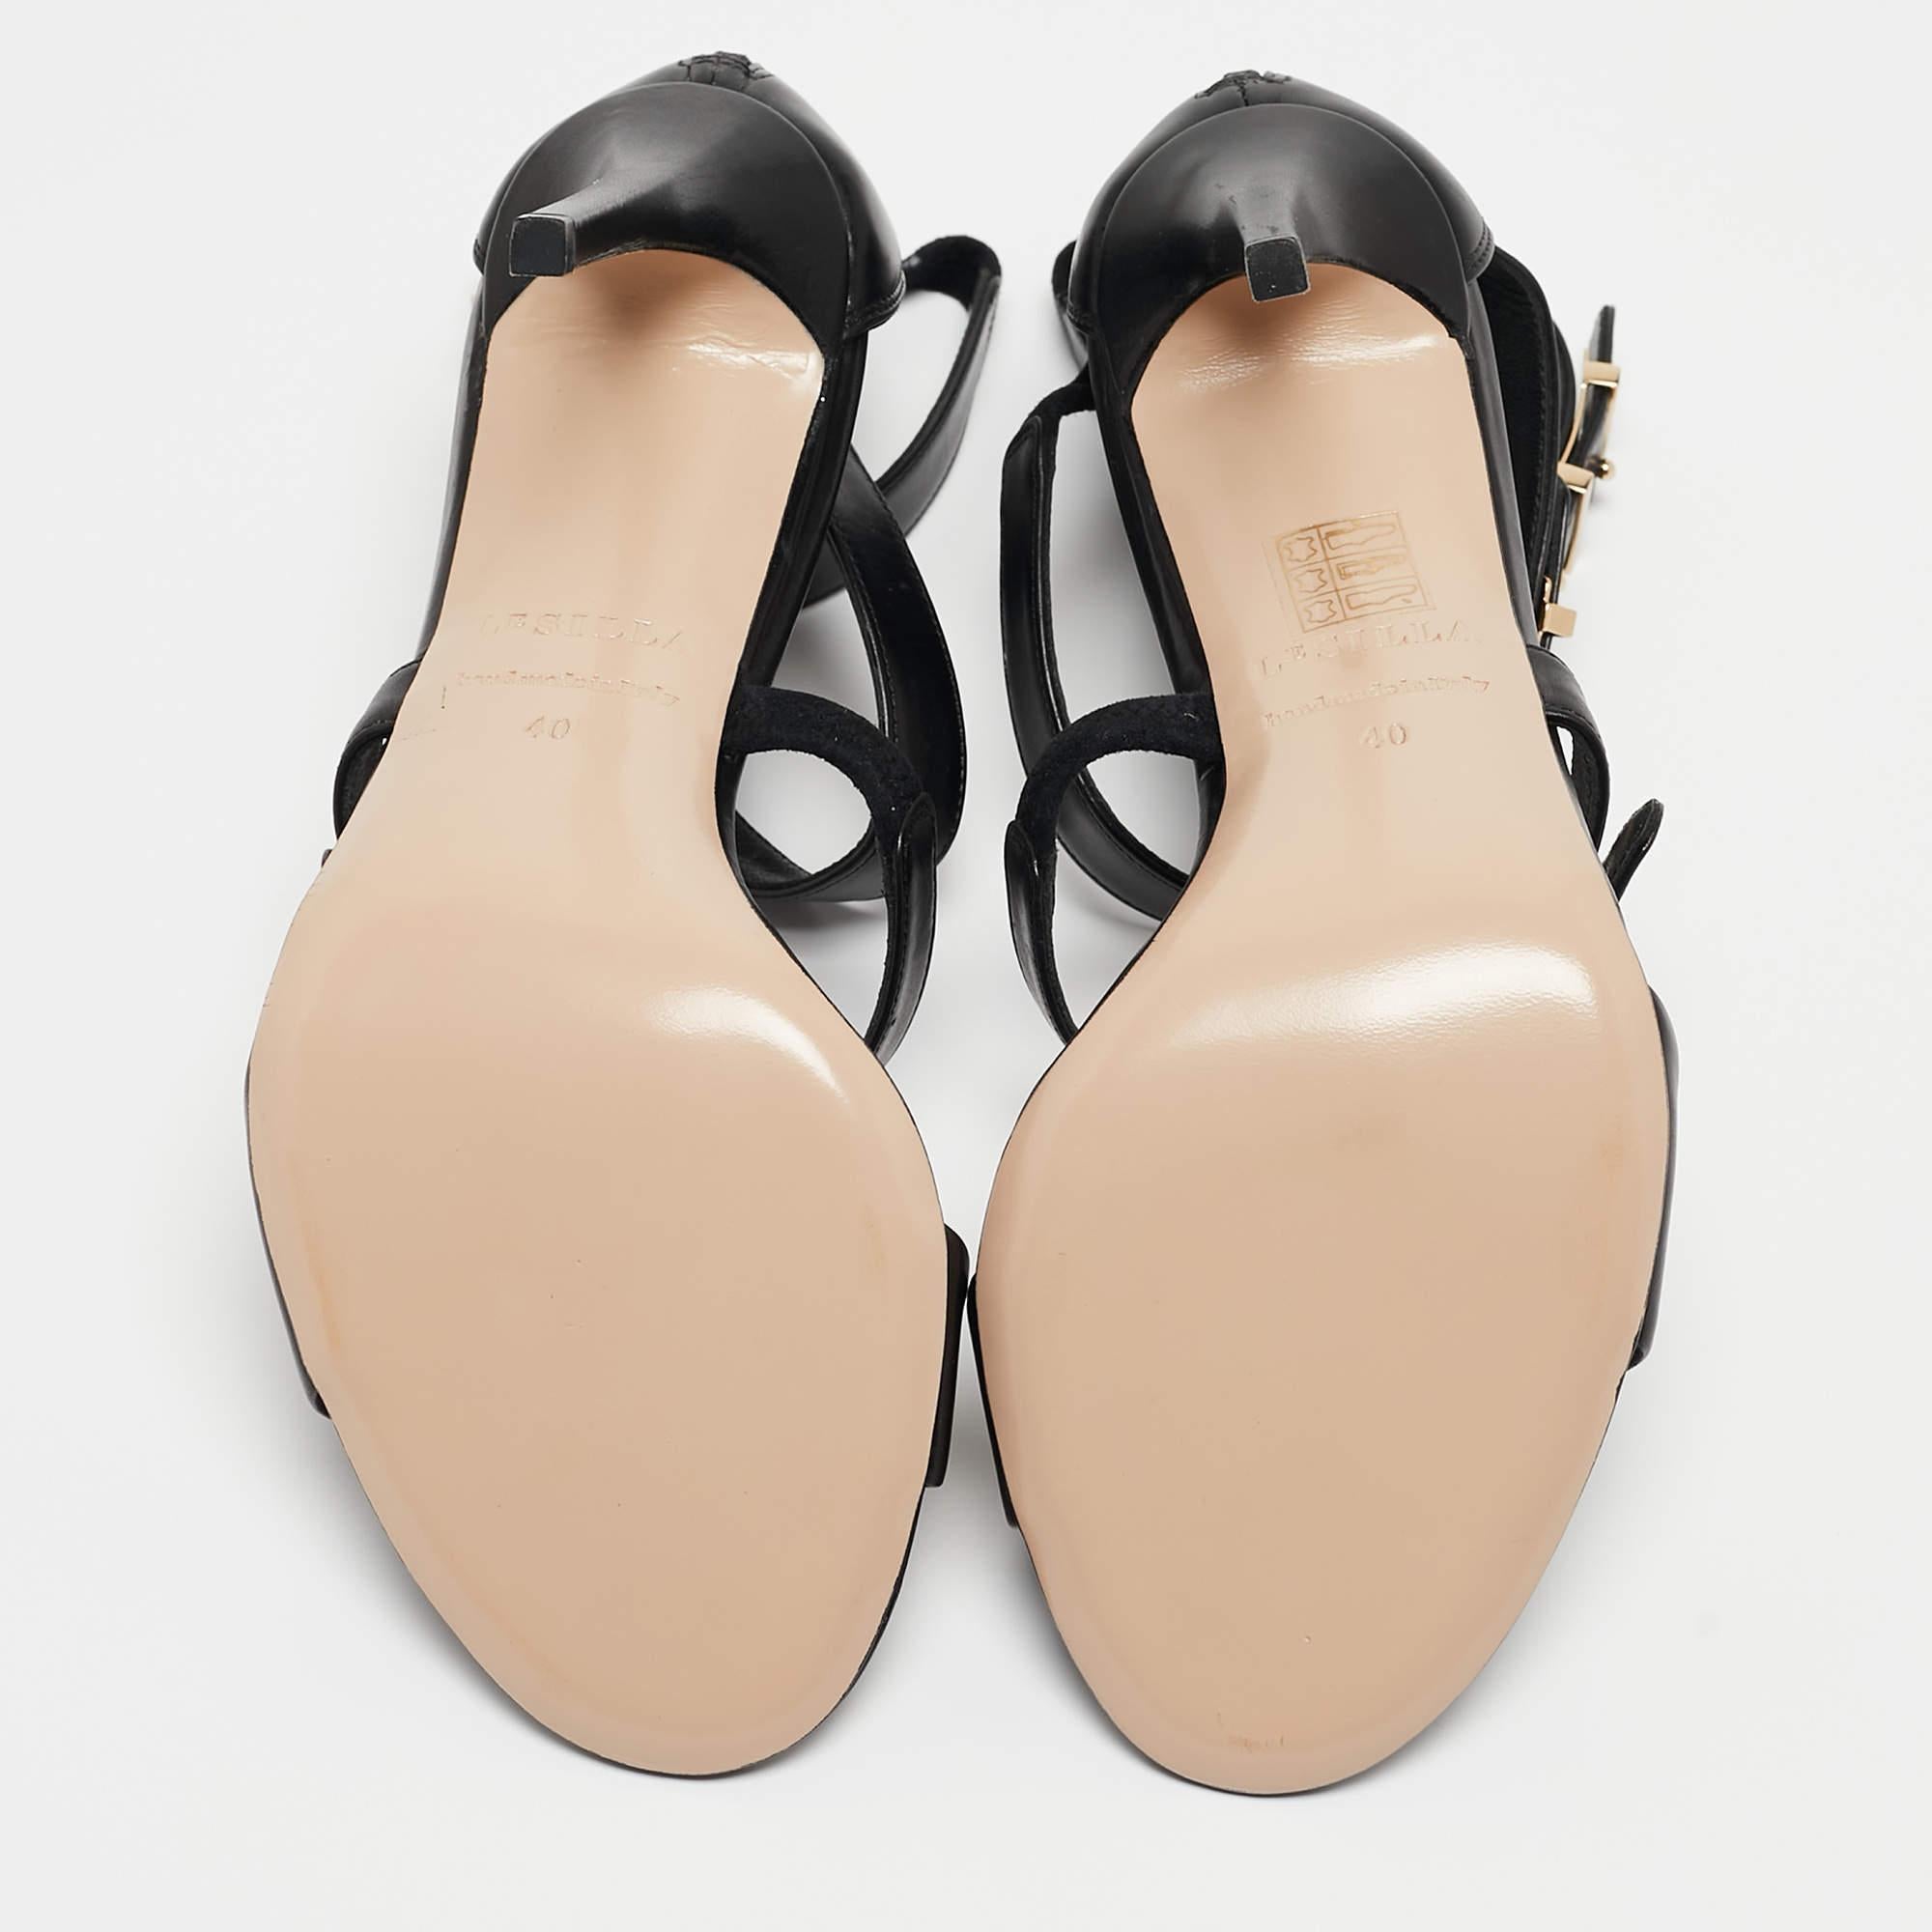 Le Silla Black Leather Minerva Strappy Sandals Size 40 3